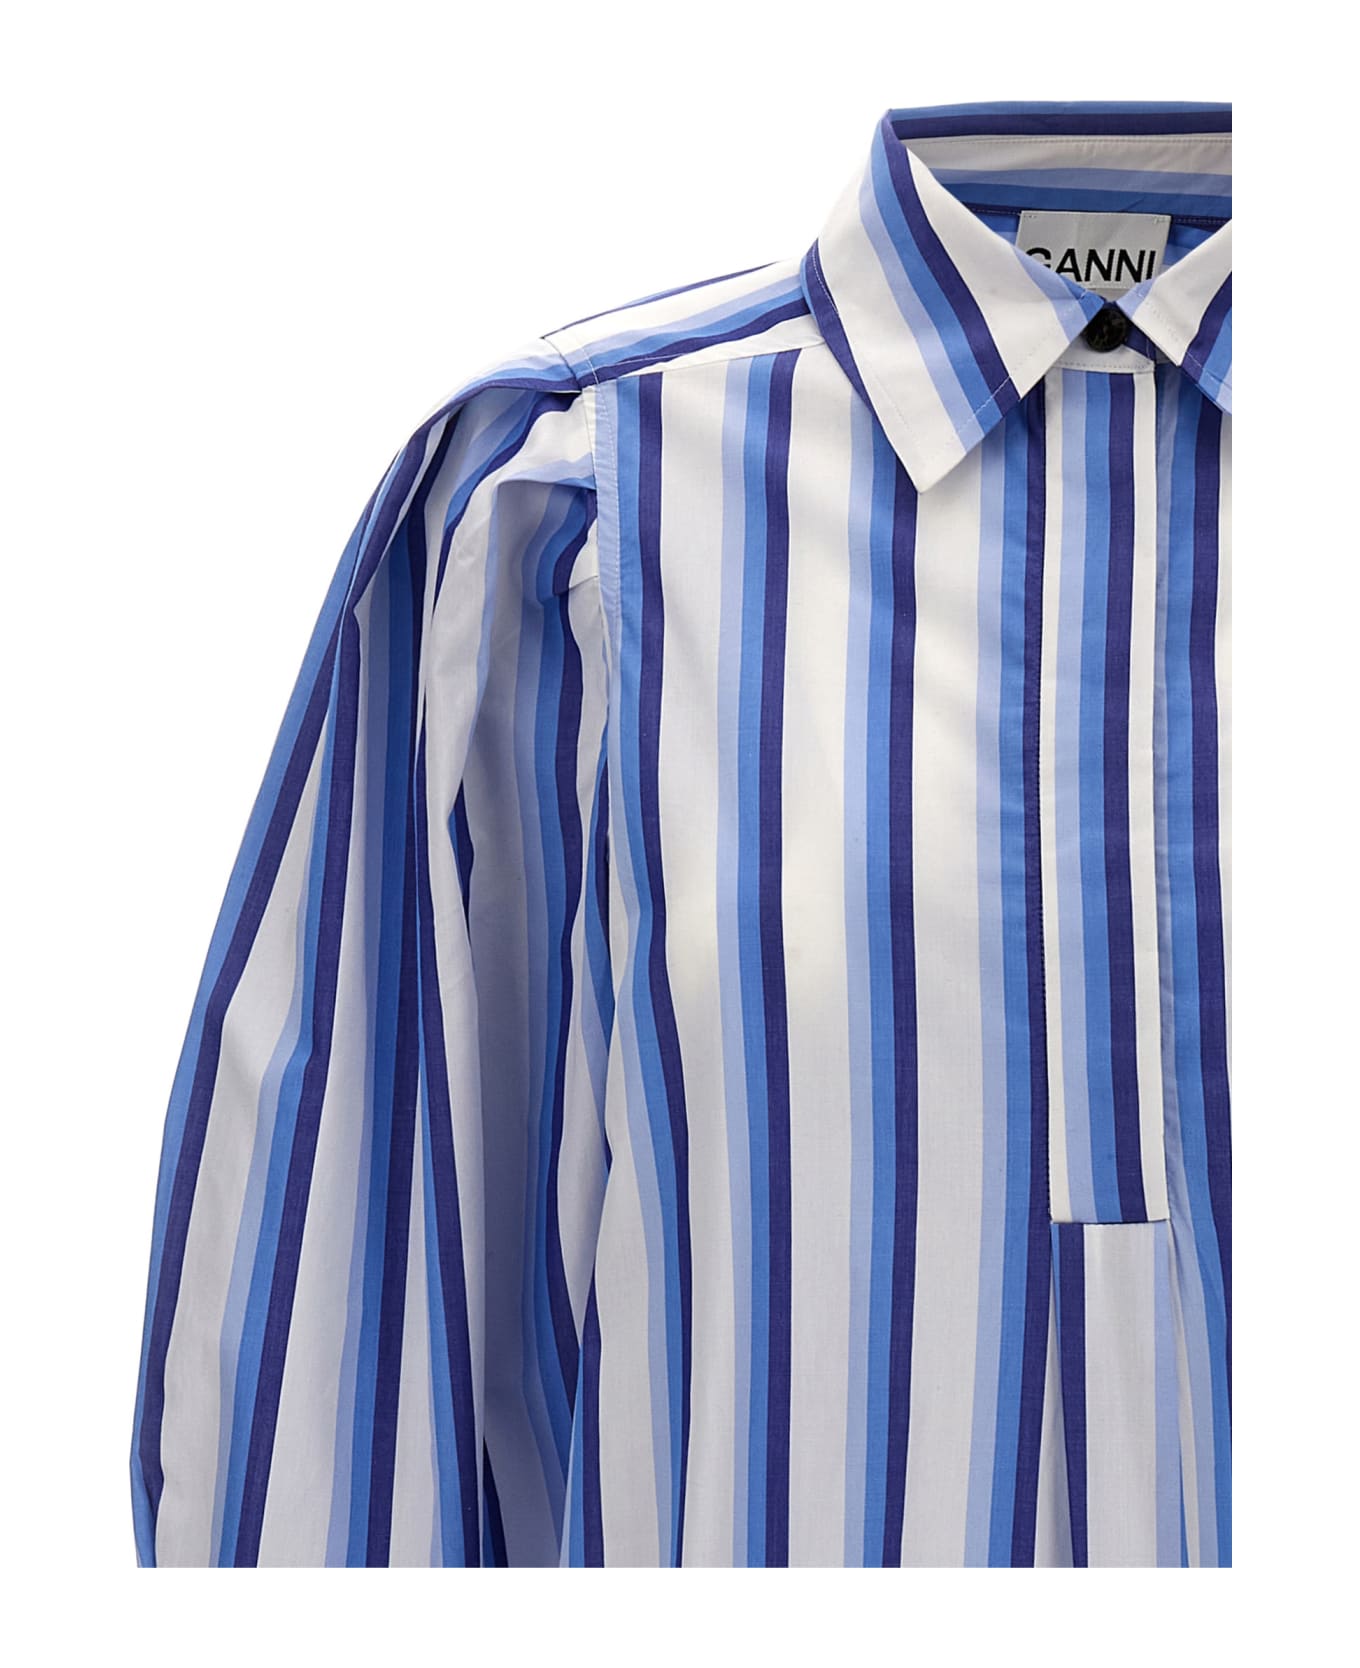 Ganni Striped Shirt Dress - Light Blue